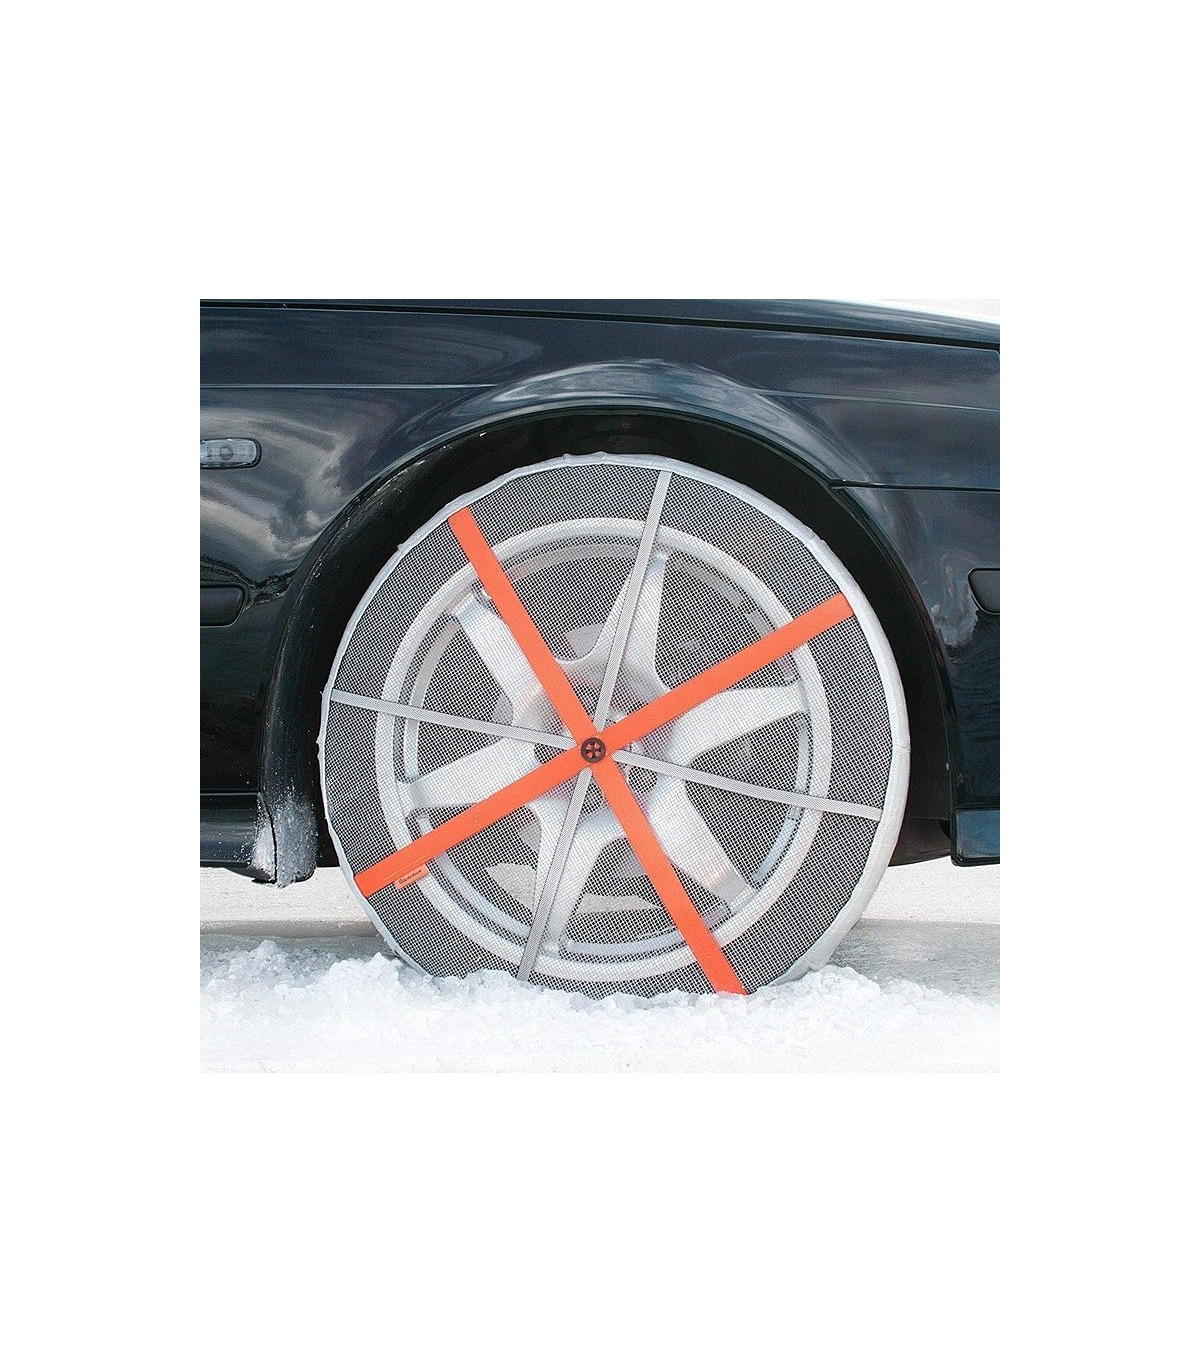 Chaussettes neige pneu : spécialiste chaussette à neige auto voiture